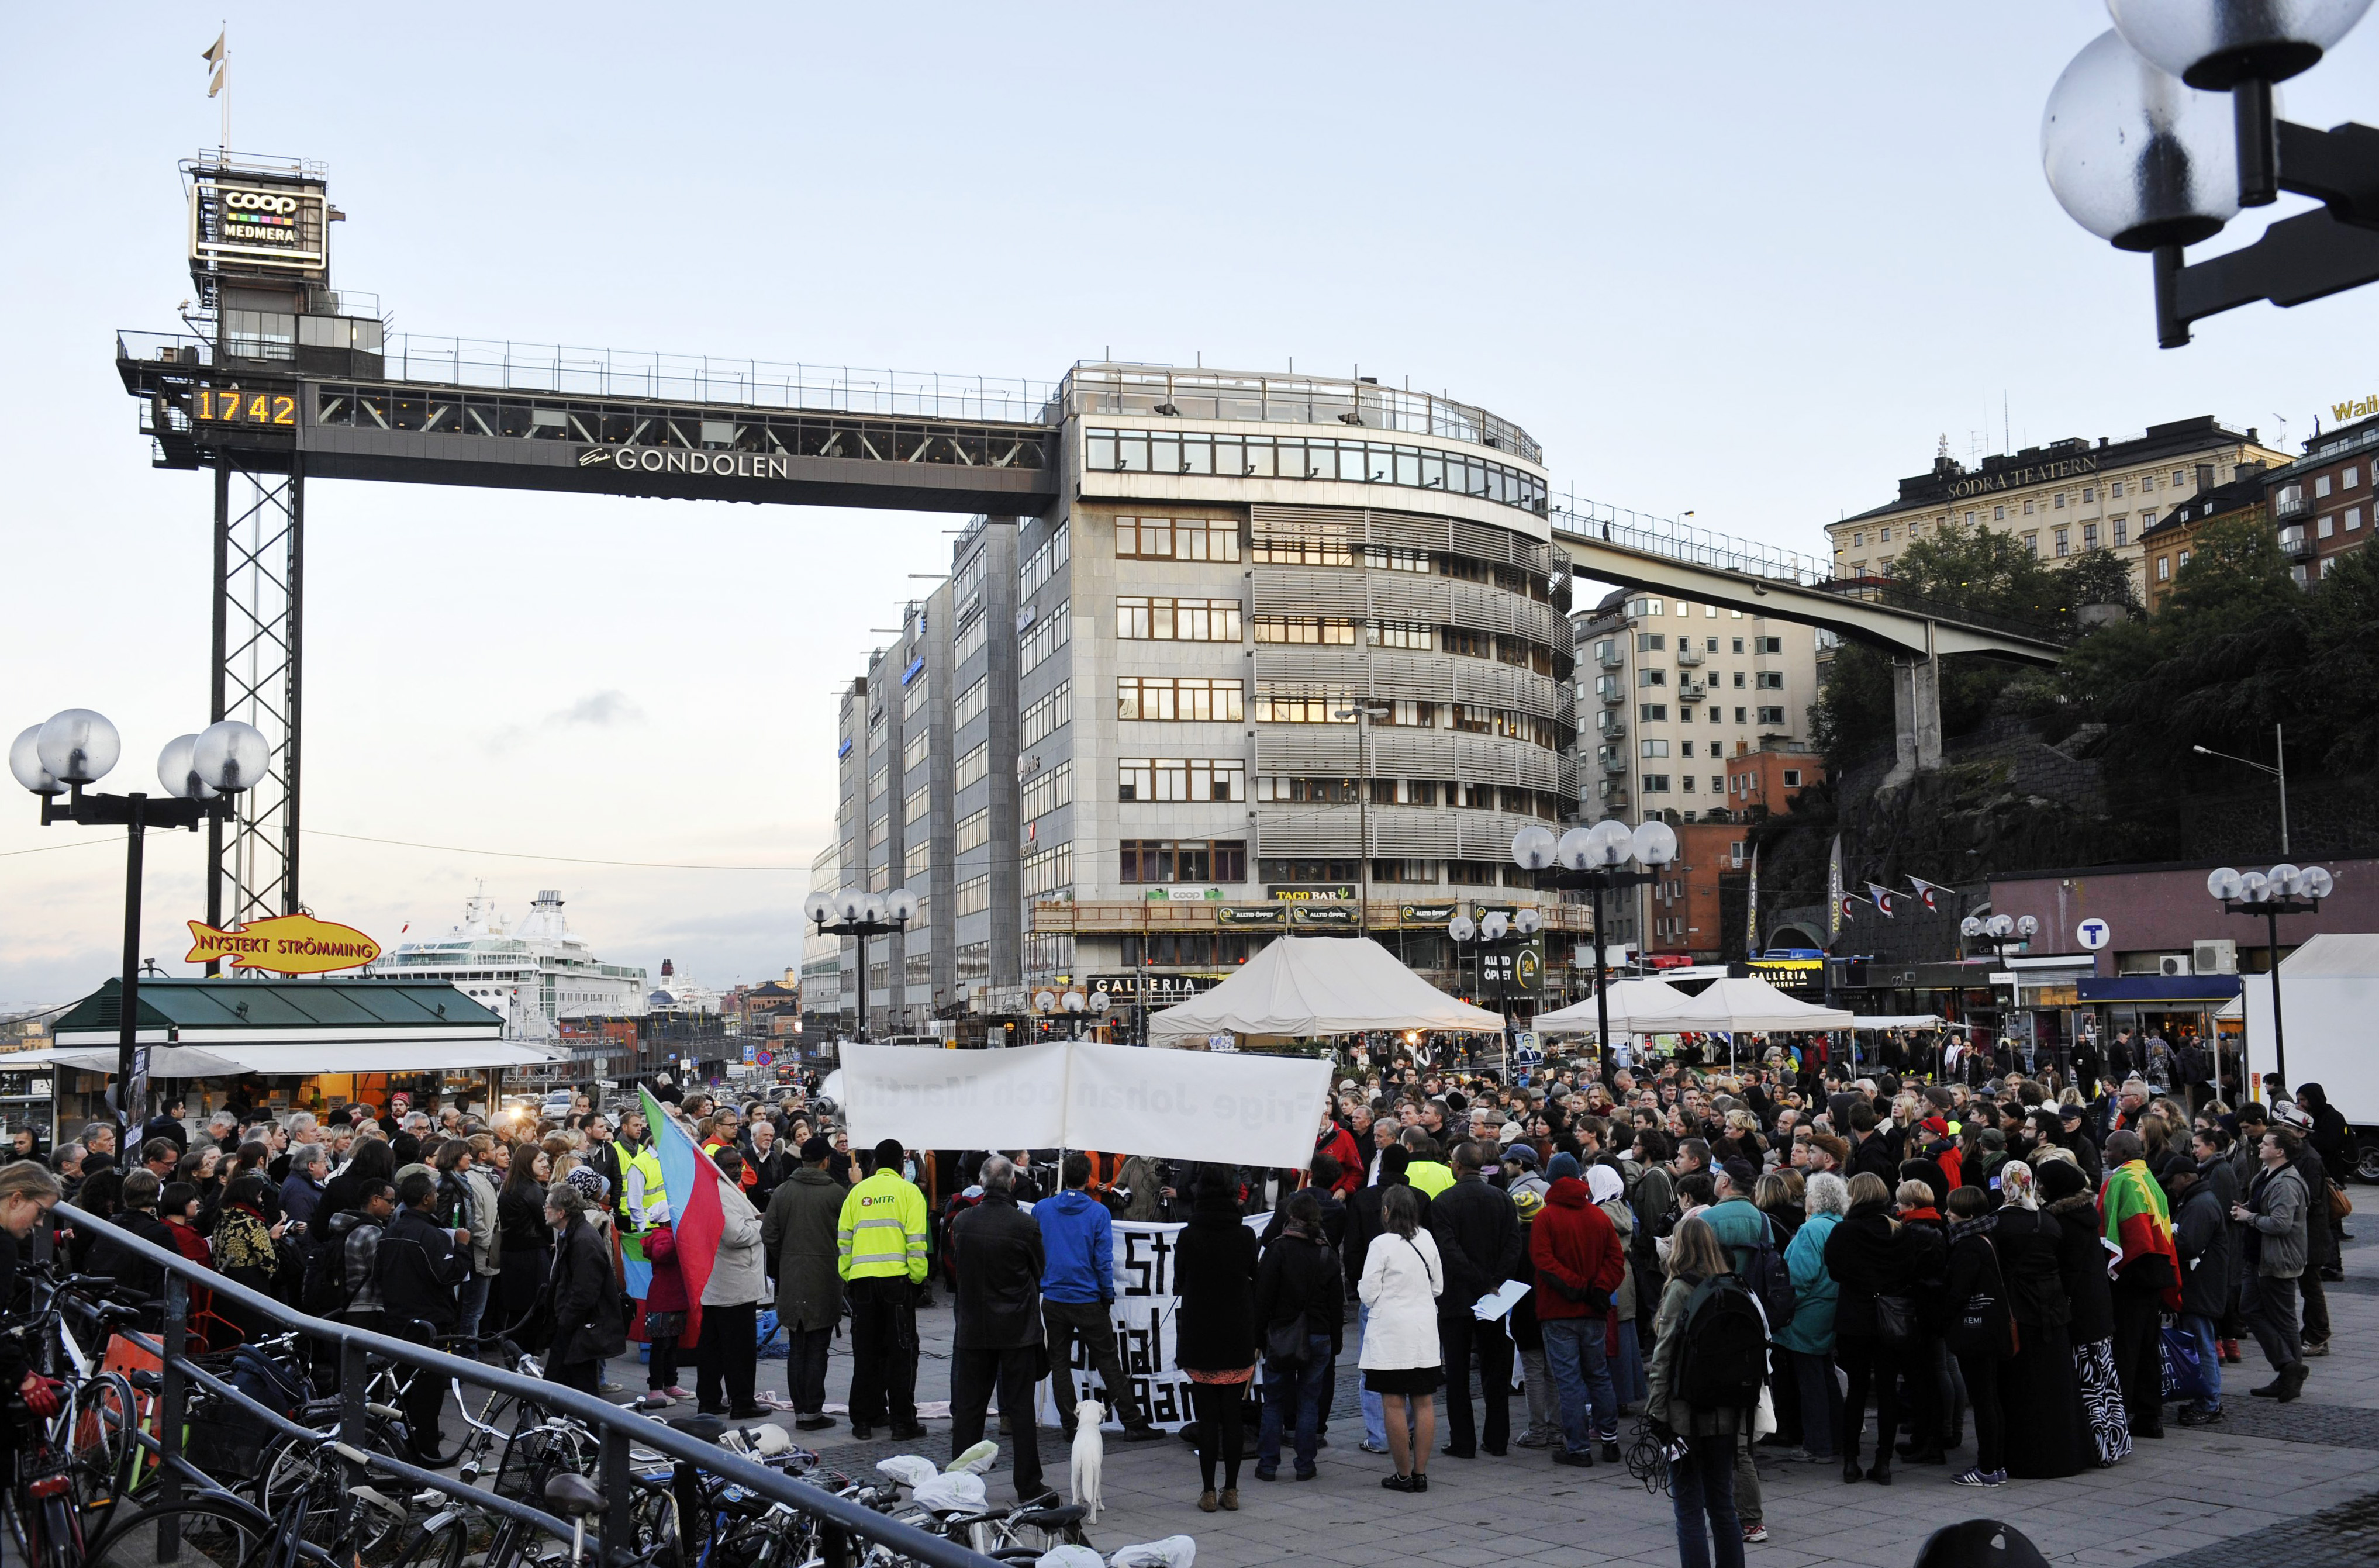 I helgen samlades journalister och andra för att demonstrera mot att inte tillräckligt görs för de fängslade svenska journalisterna. Nu kedjar ett trettiotal kollegor fast sig vid Kronobergshäktet.